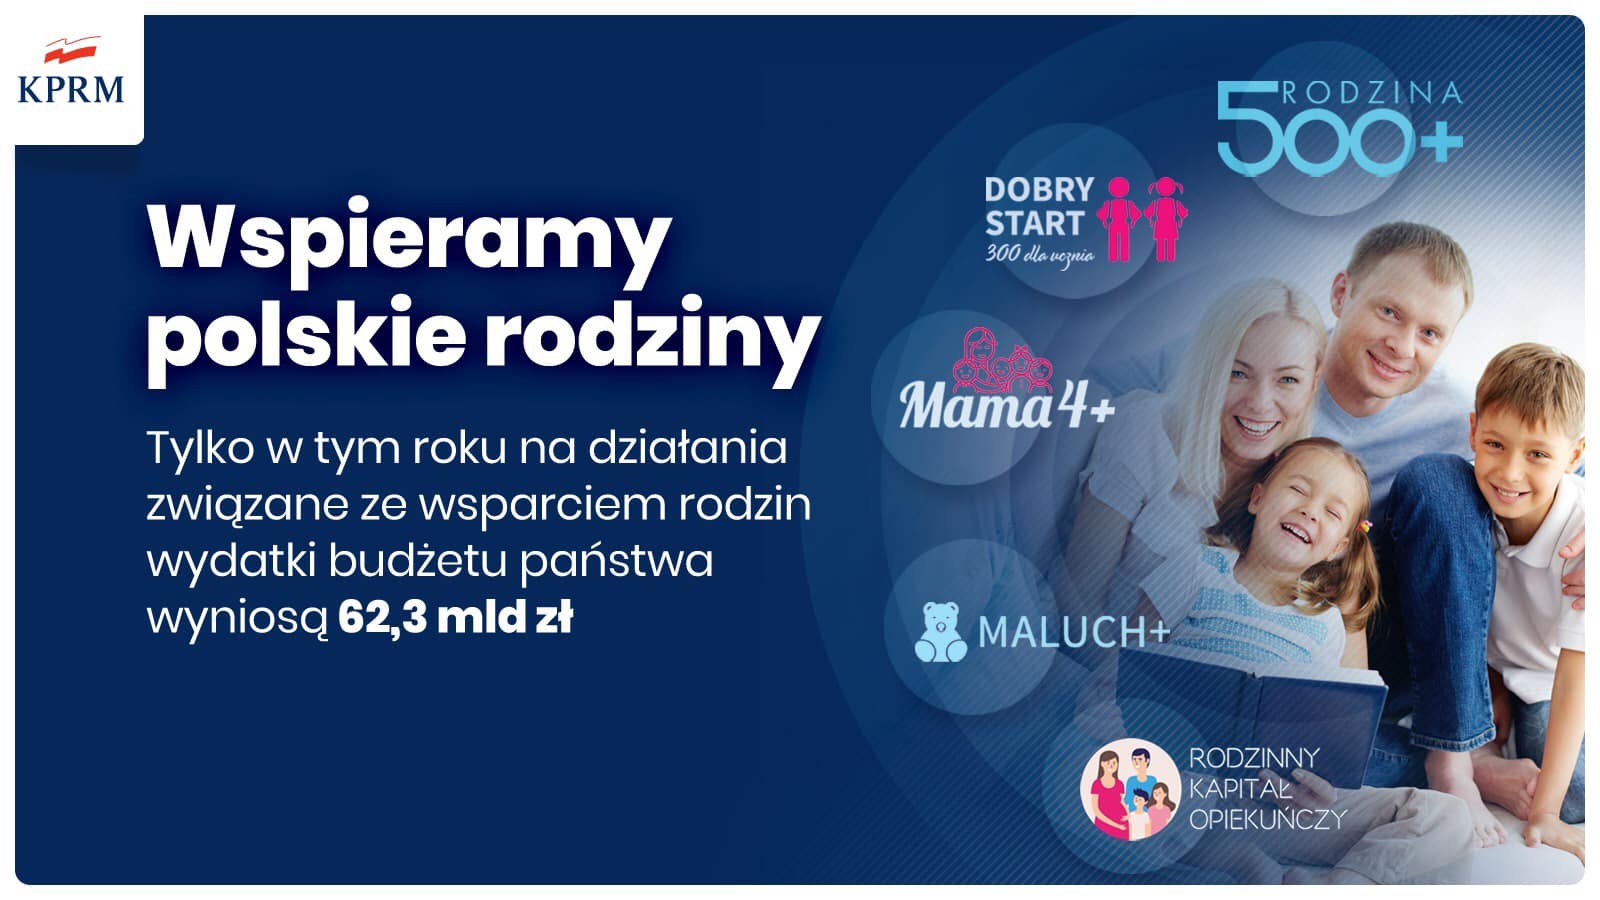 Wspieramy polskie rodziny!